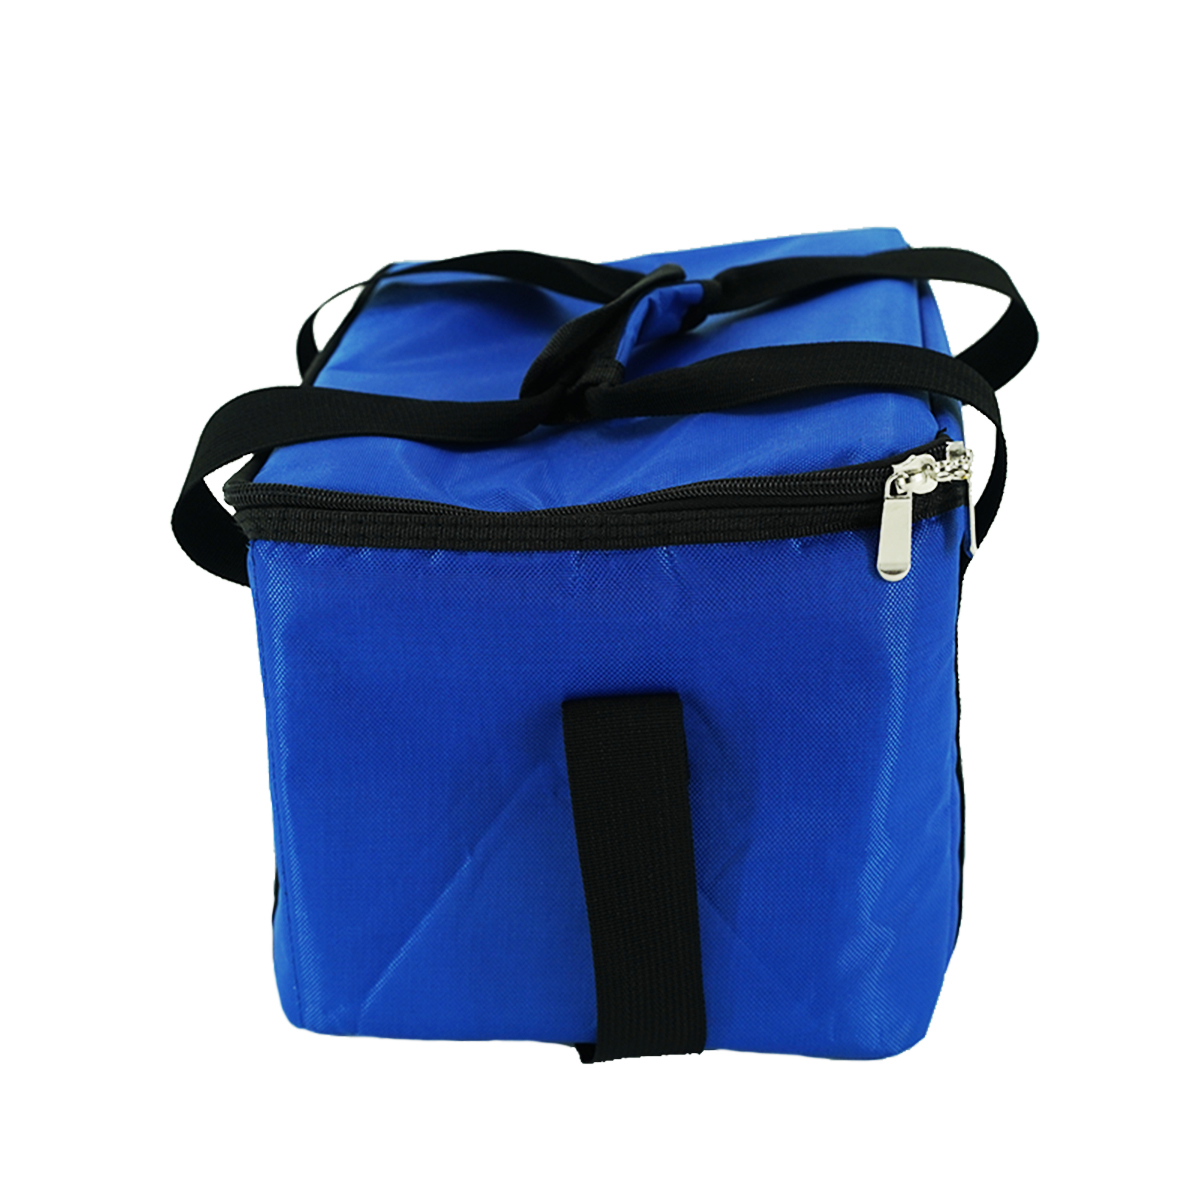 فوڈ انسولیشن ڈلیوری بیگ موصل دوبارہ قابل استعمال گروسری بیگ گرم ٹھنڈا تھرمل بیگ کیٹرنگ ریستوراں کیمپنگ گروسری ٹرانسپورٹ کے لئے